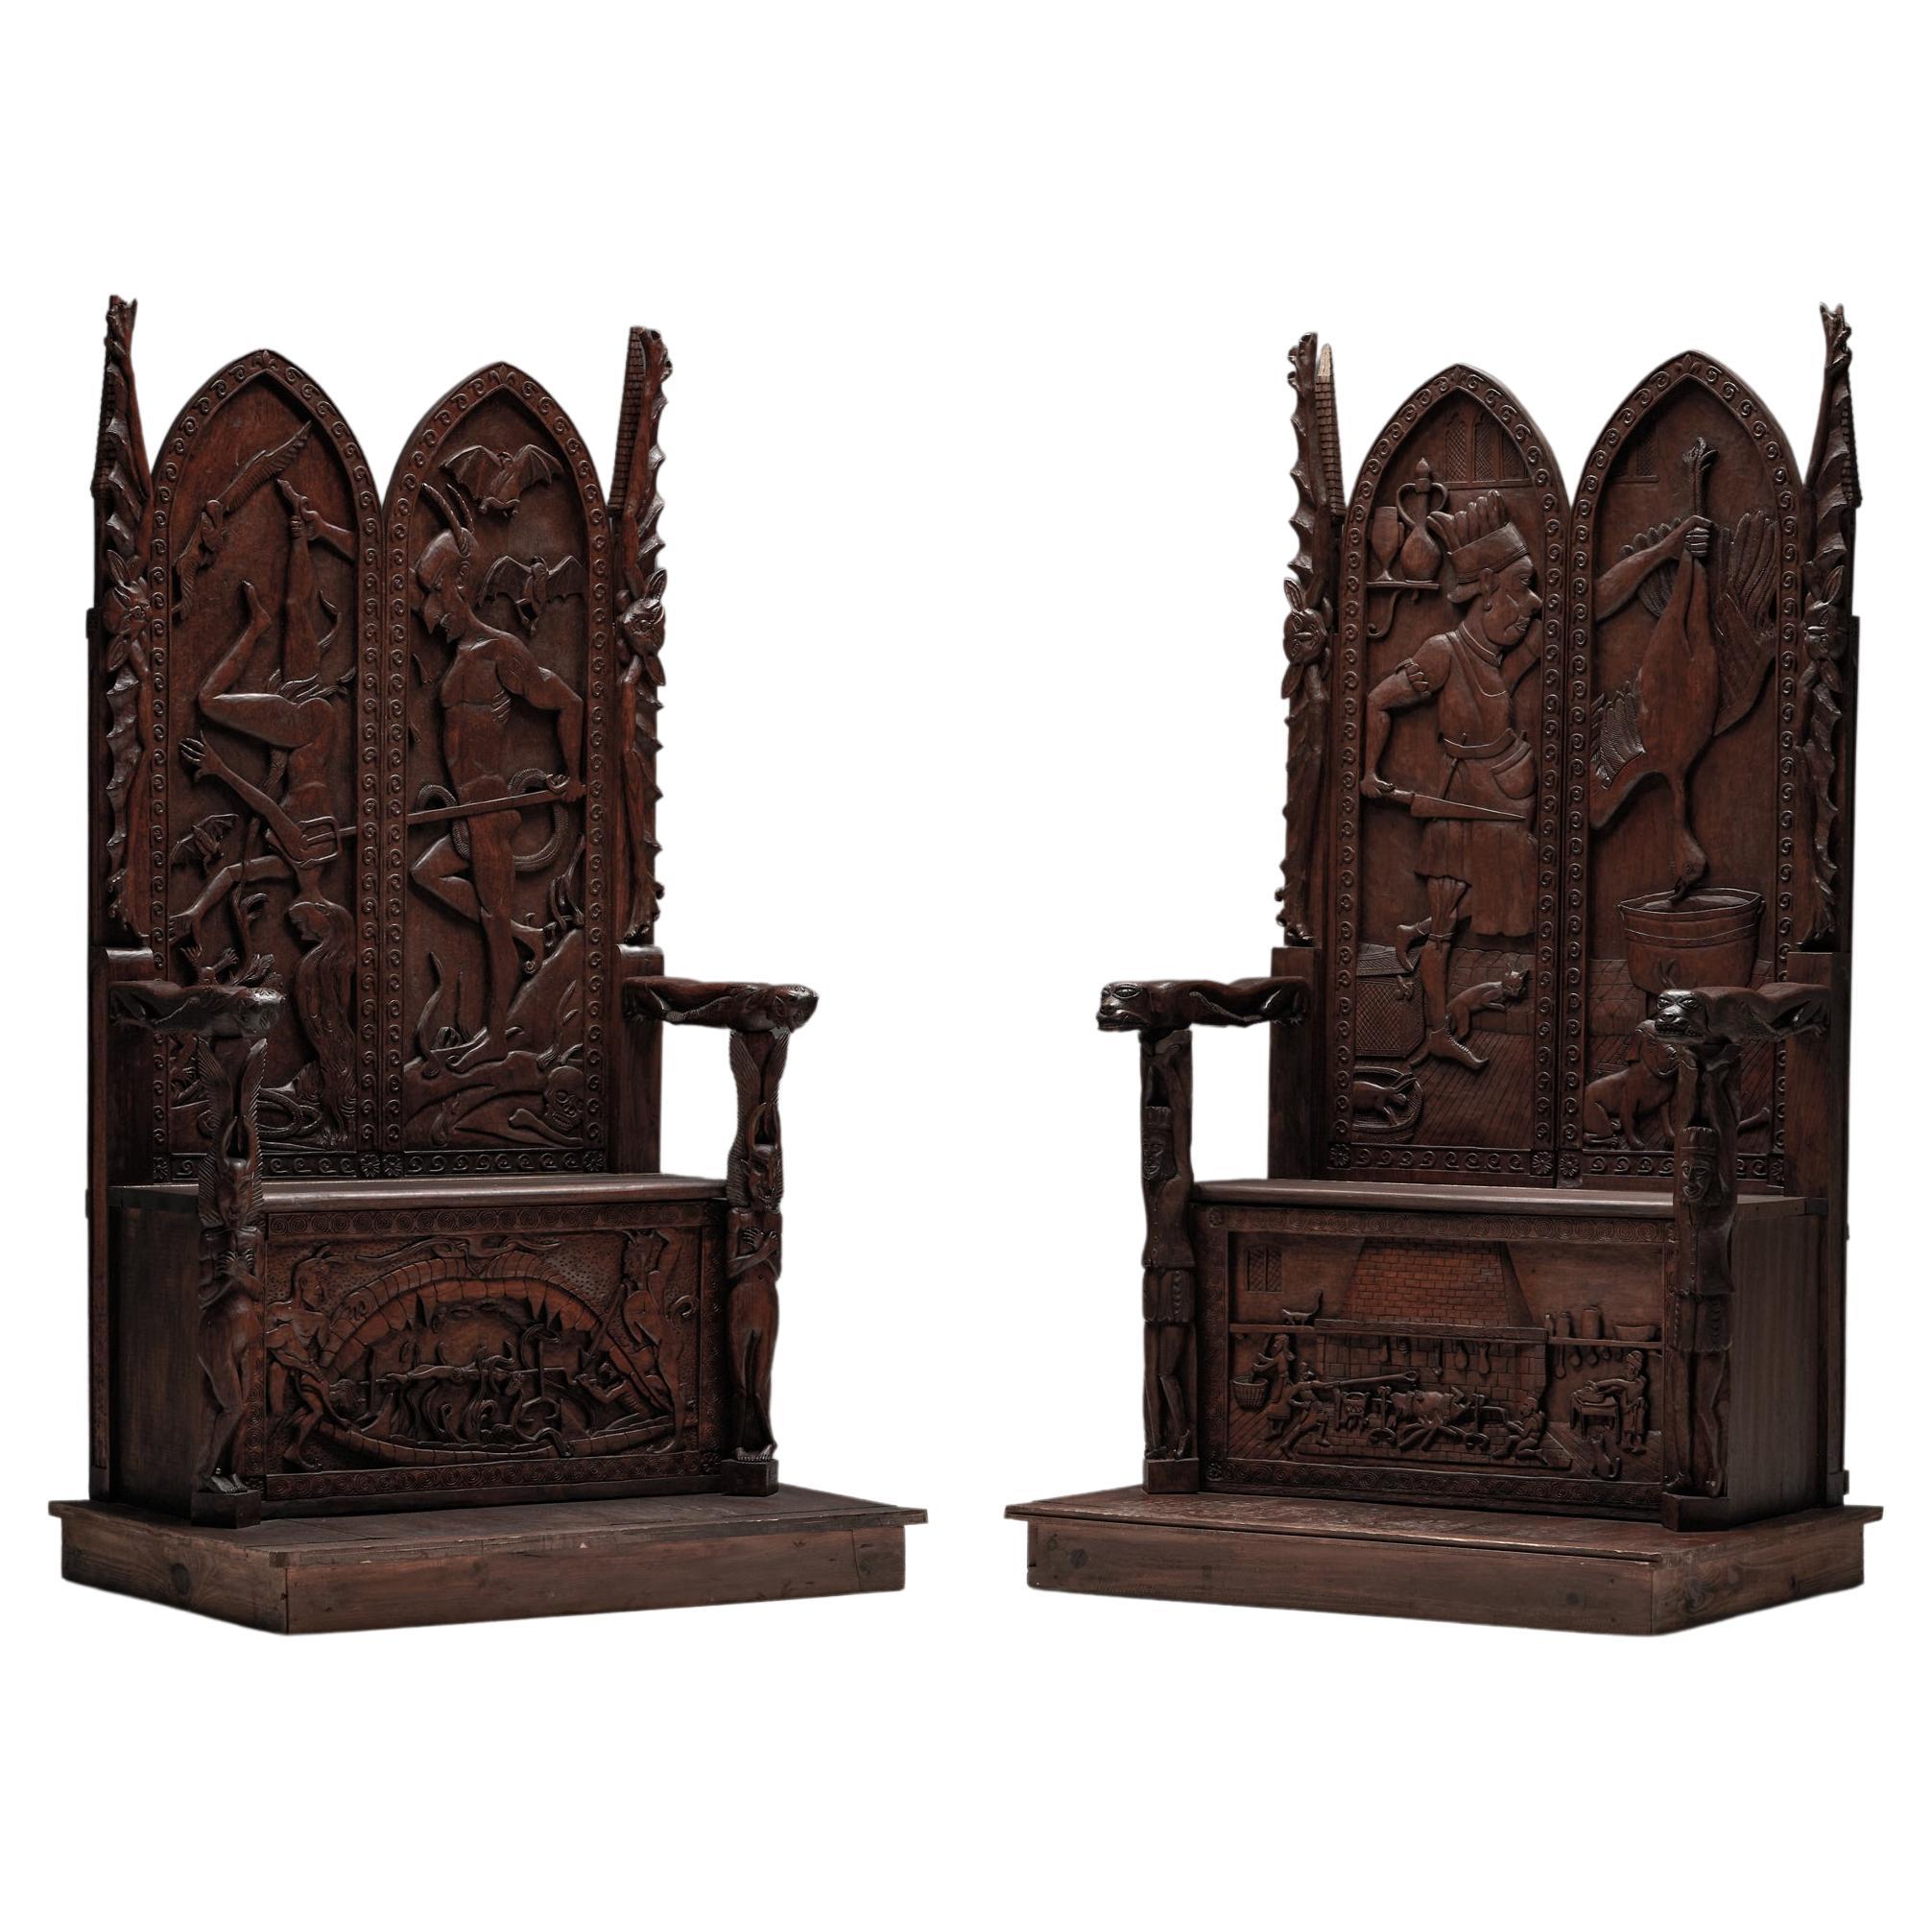 Fauteuils trônes sculptés avec motif en relief en bois, XXe siècle